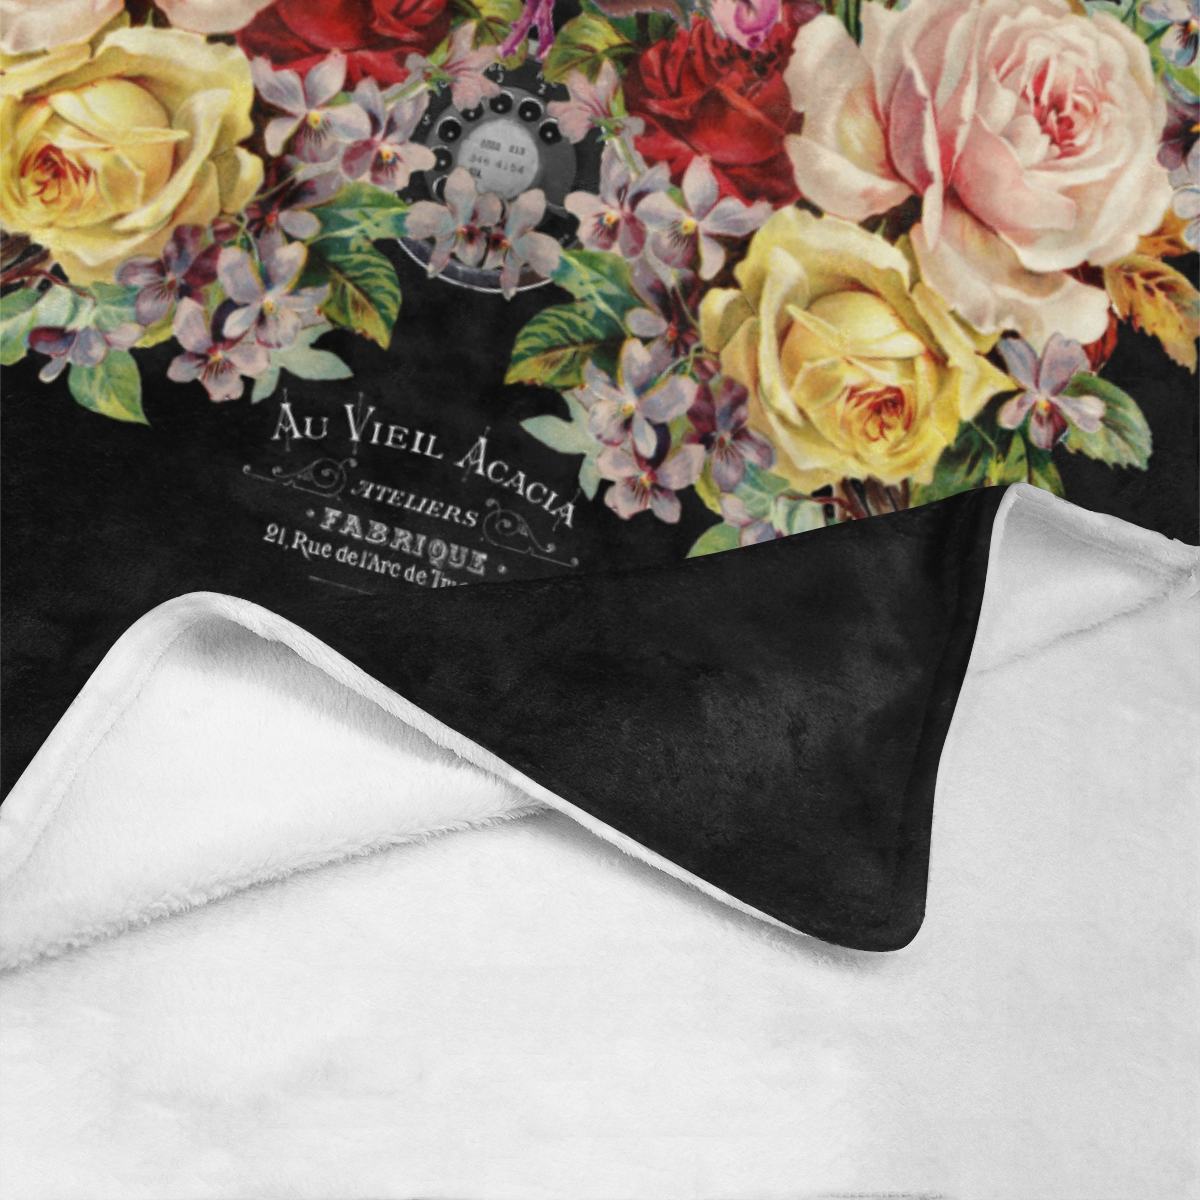 Nuit des Roses pour Elle Ultra-Soft Micro Fleece Blanket 60"x80"